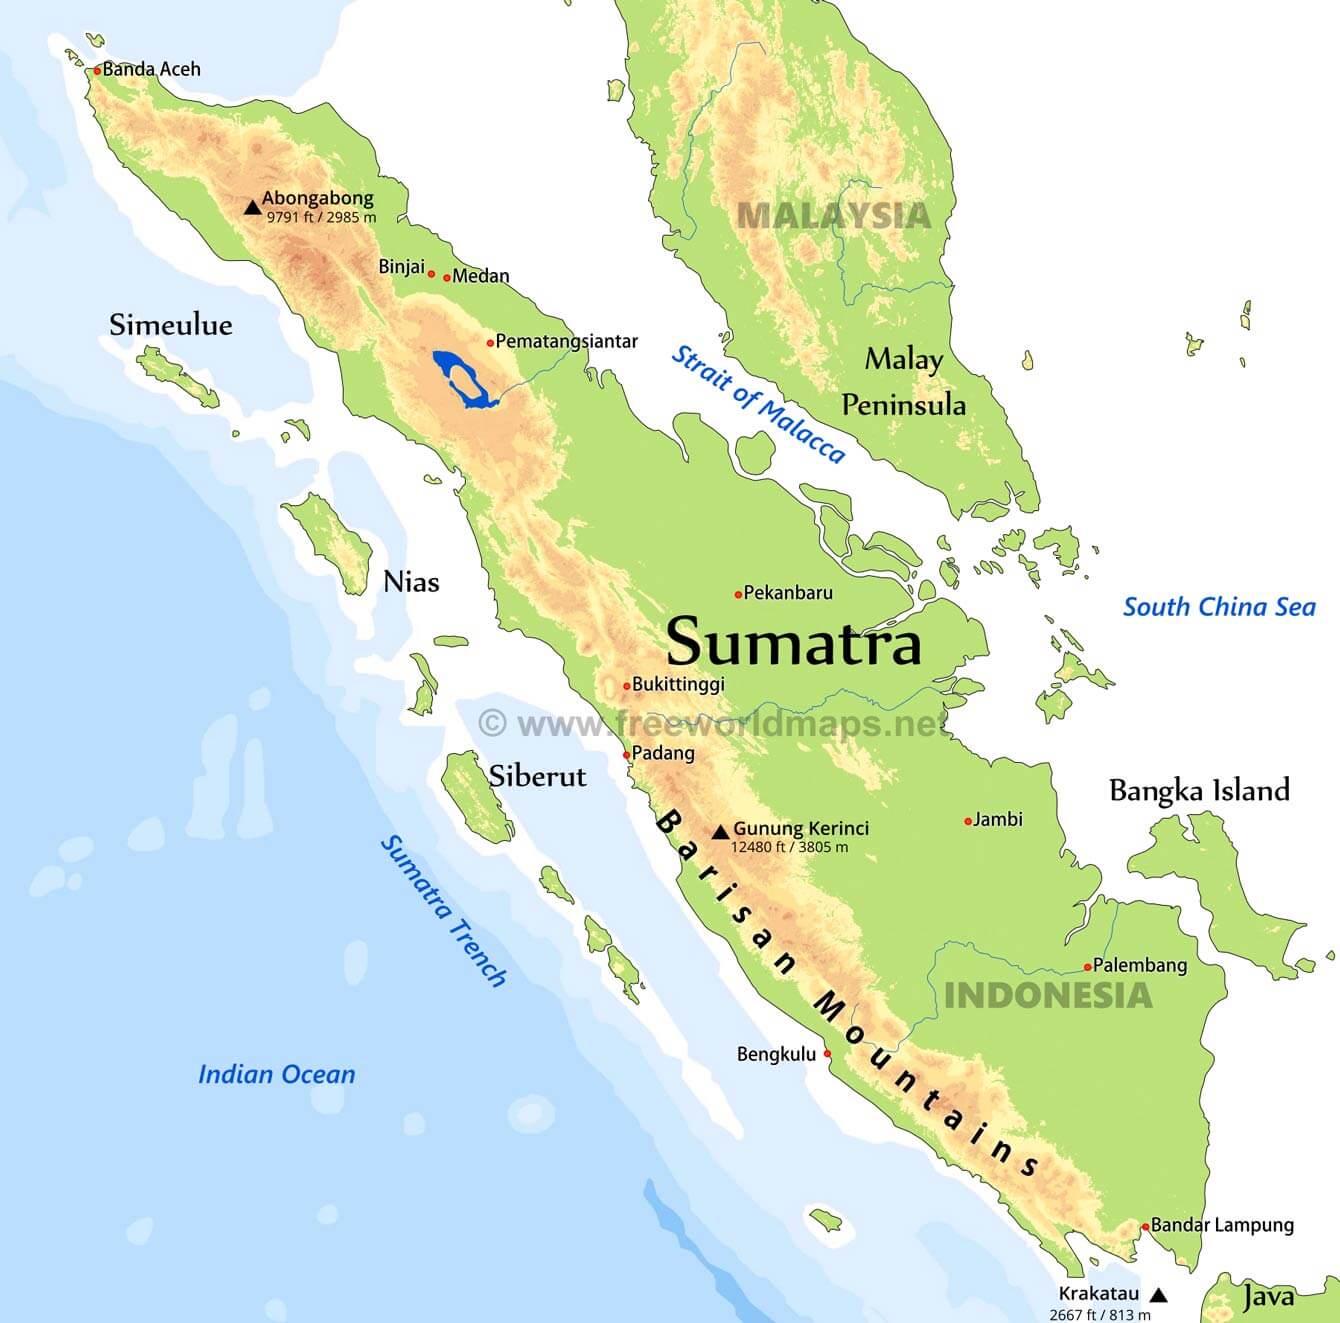 Sumatra PDF 3.5.1 instal the new